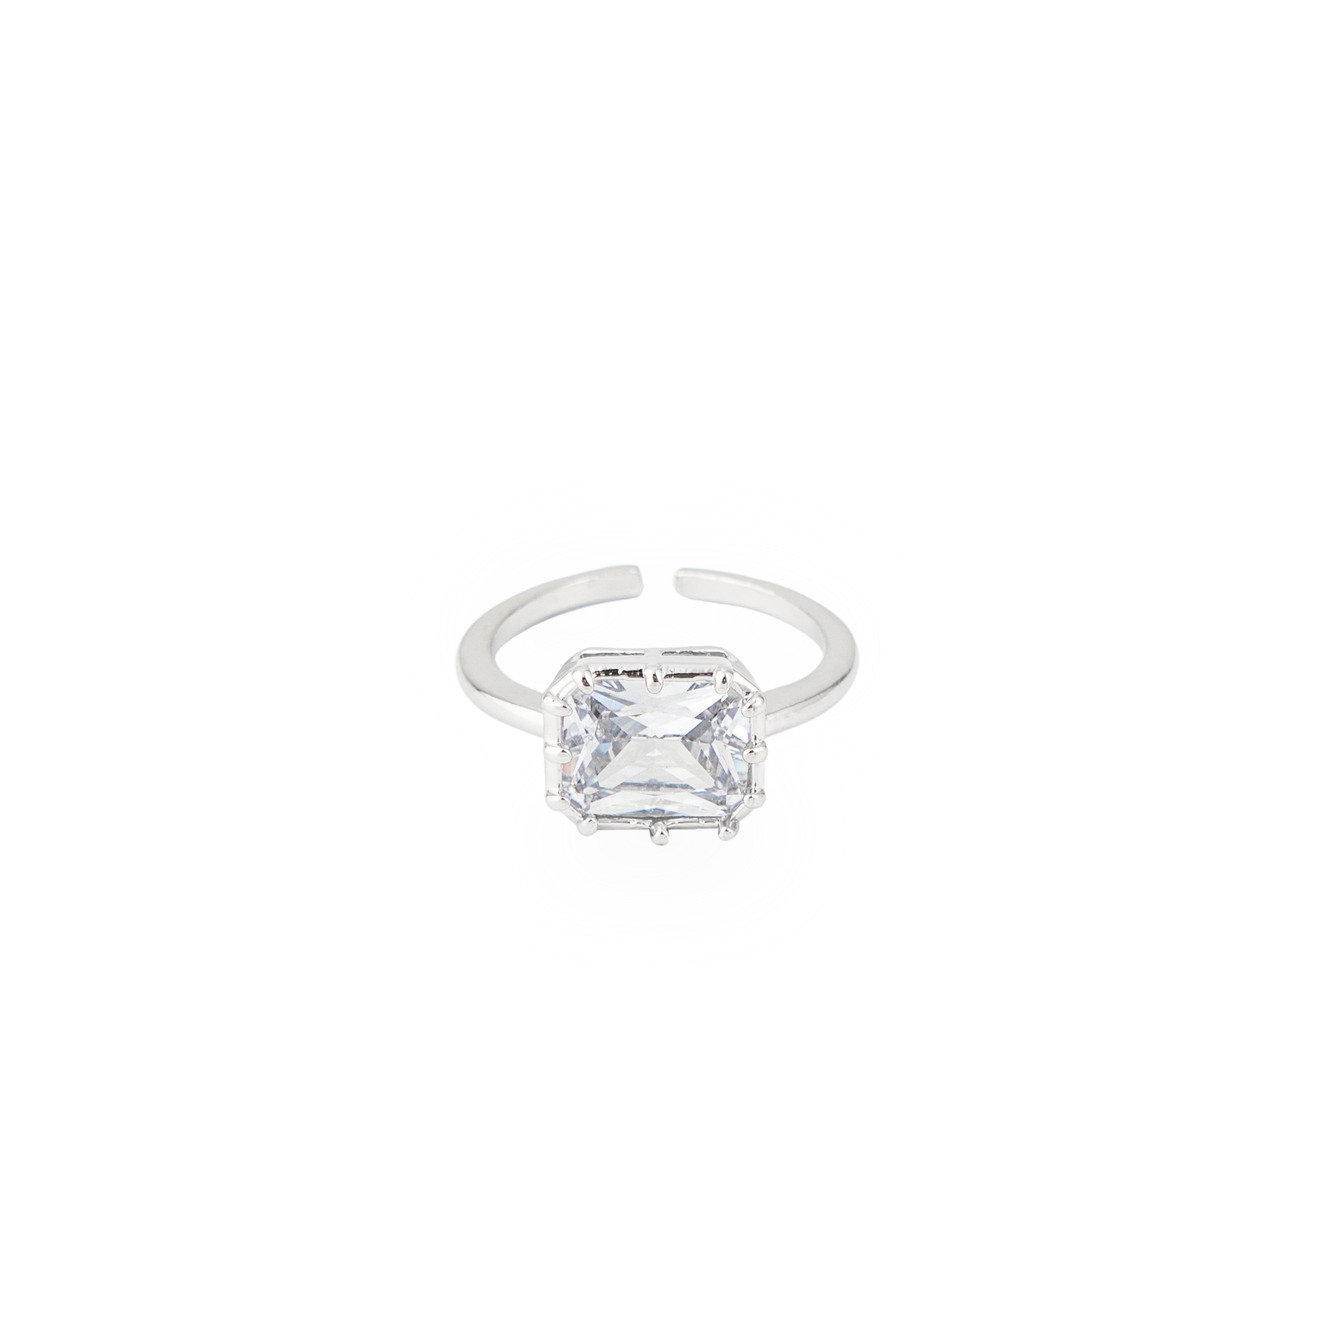 Free Form Jewelry Серебристое кольцо с крупным кристаллом free form jewelry серебристое двойное кольцо с бантиком и кристаллами